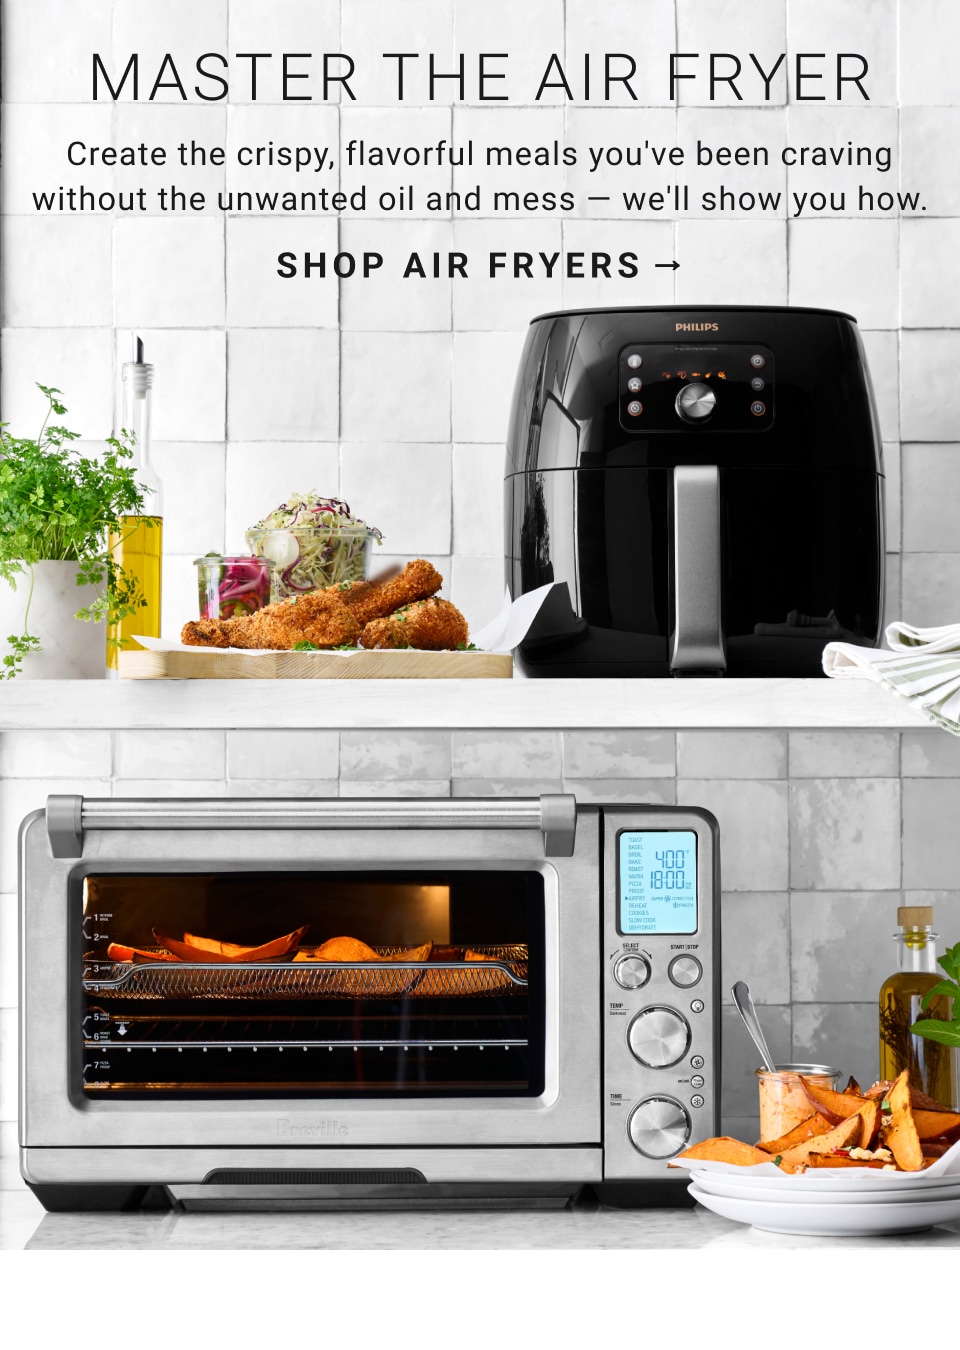 Williams Sonoma Open Kitchen Digital Air Fryer